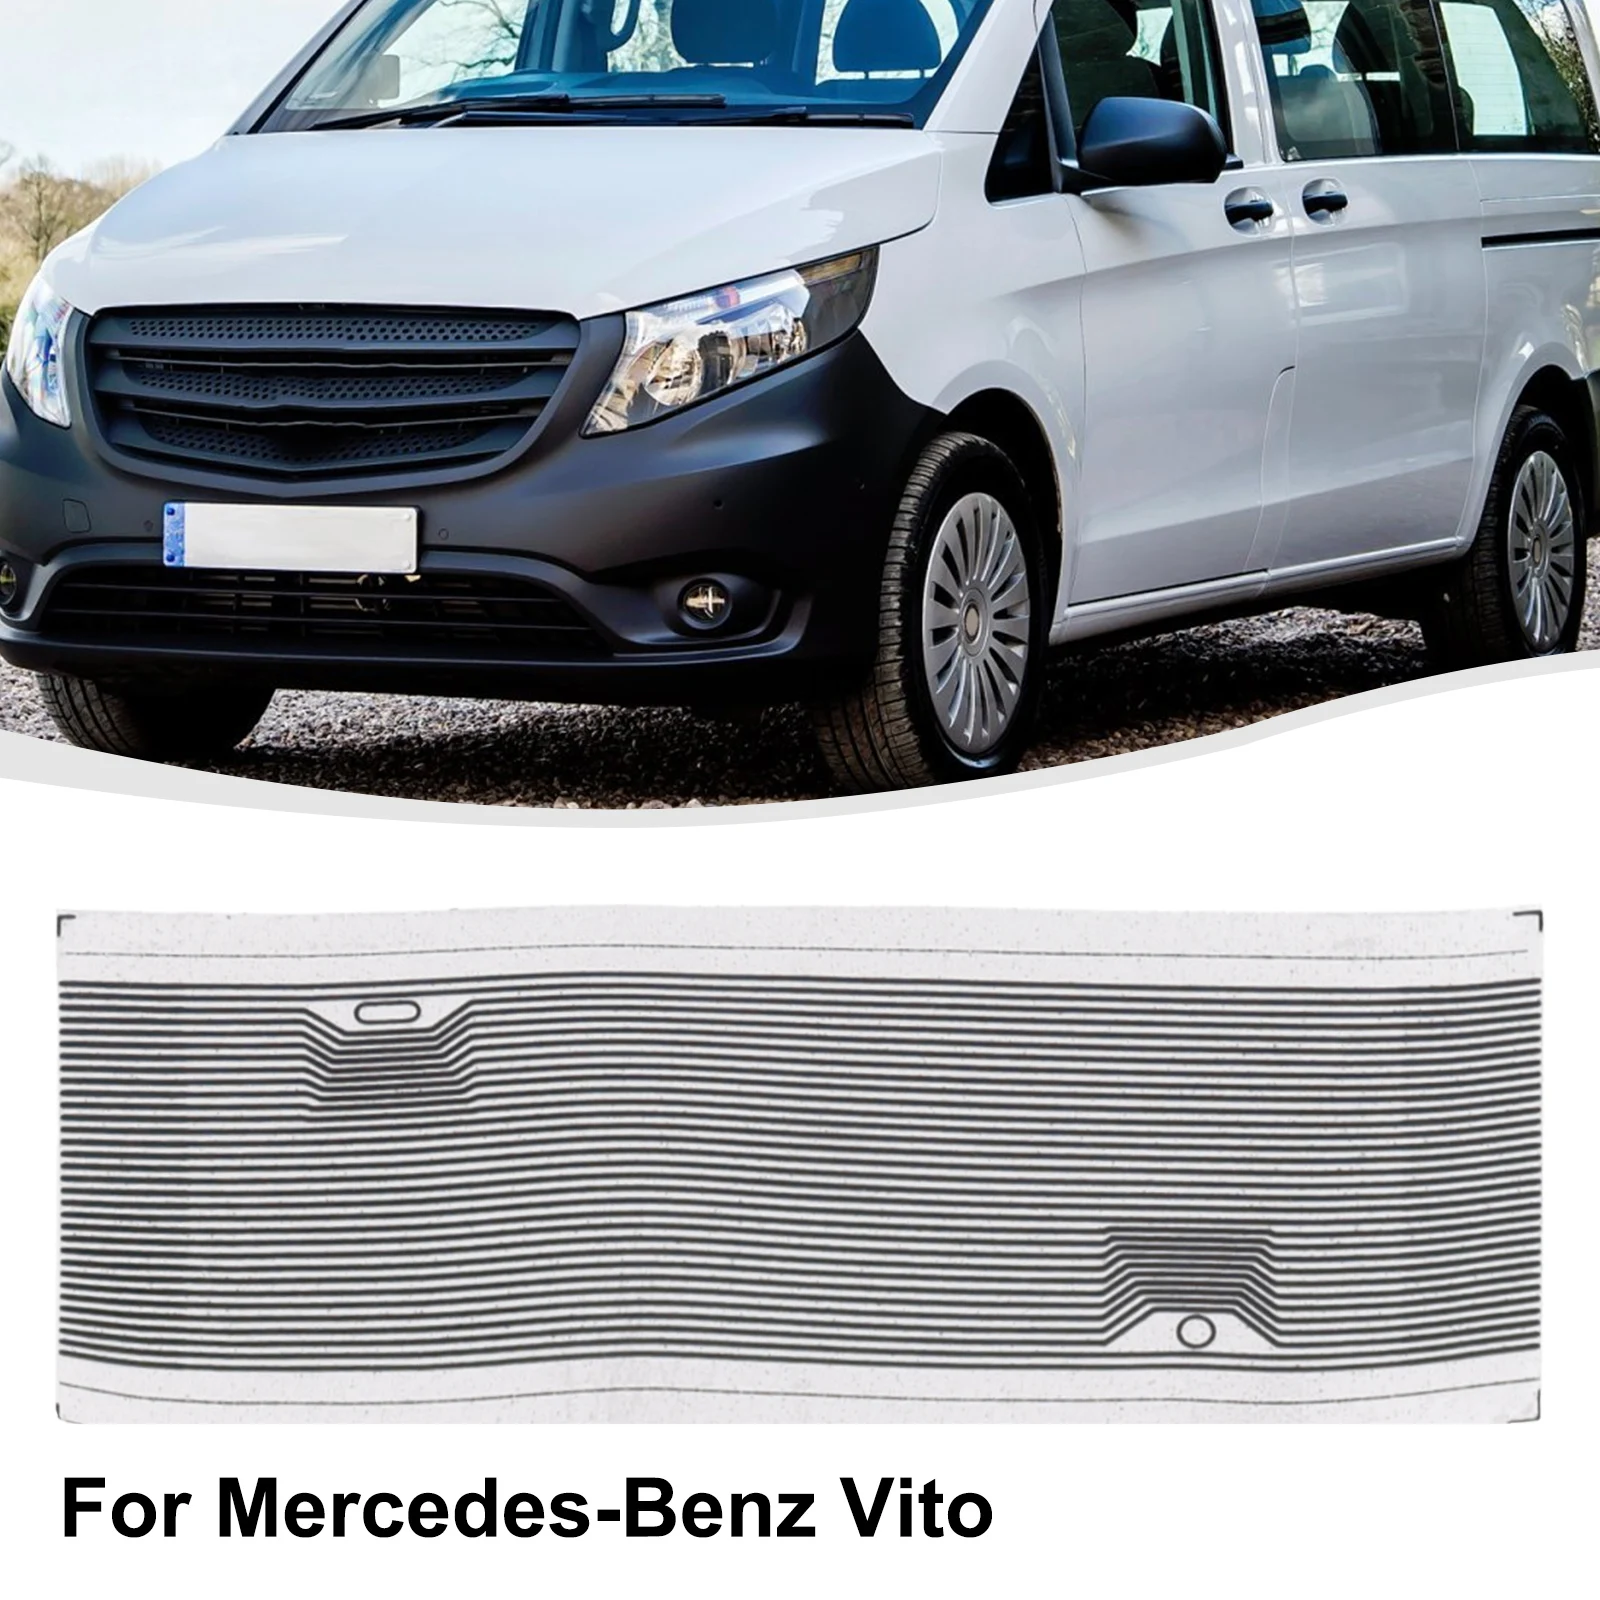 

Фотообои для Mercedes-Benz Vito желтого и белого цвета